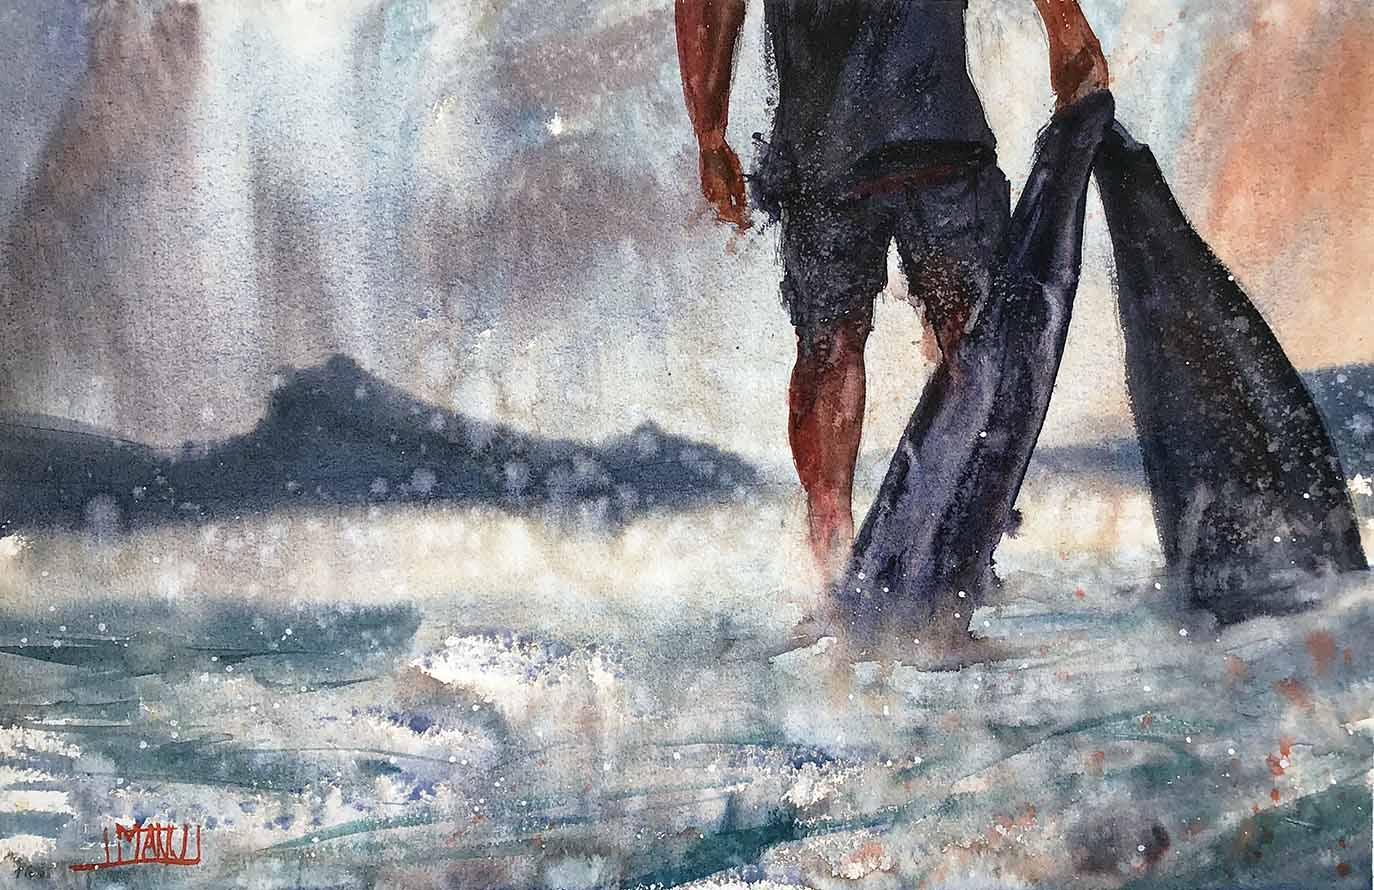 seascape 2021 series dettaglio Emmanuele Cammarano fine artist acquerello watercolor aquarelle